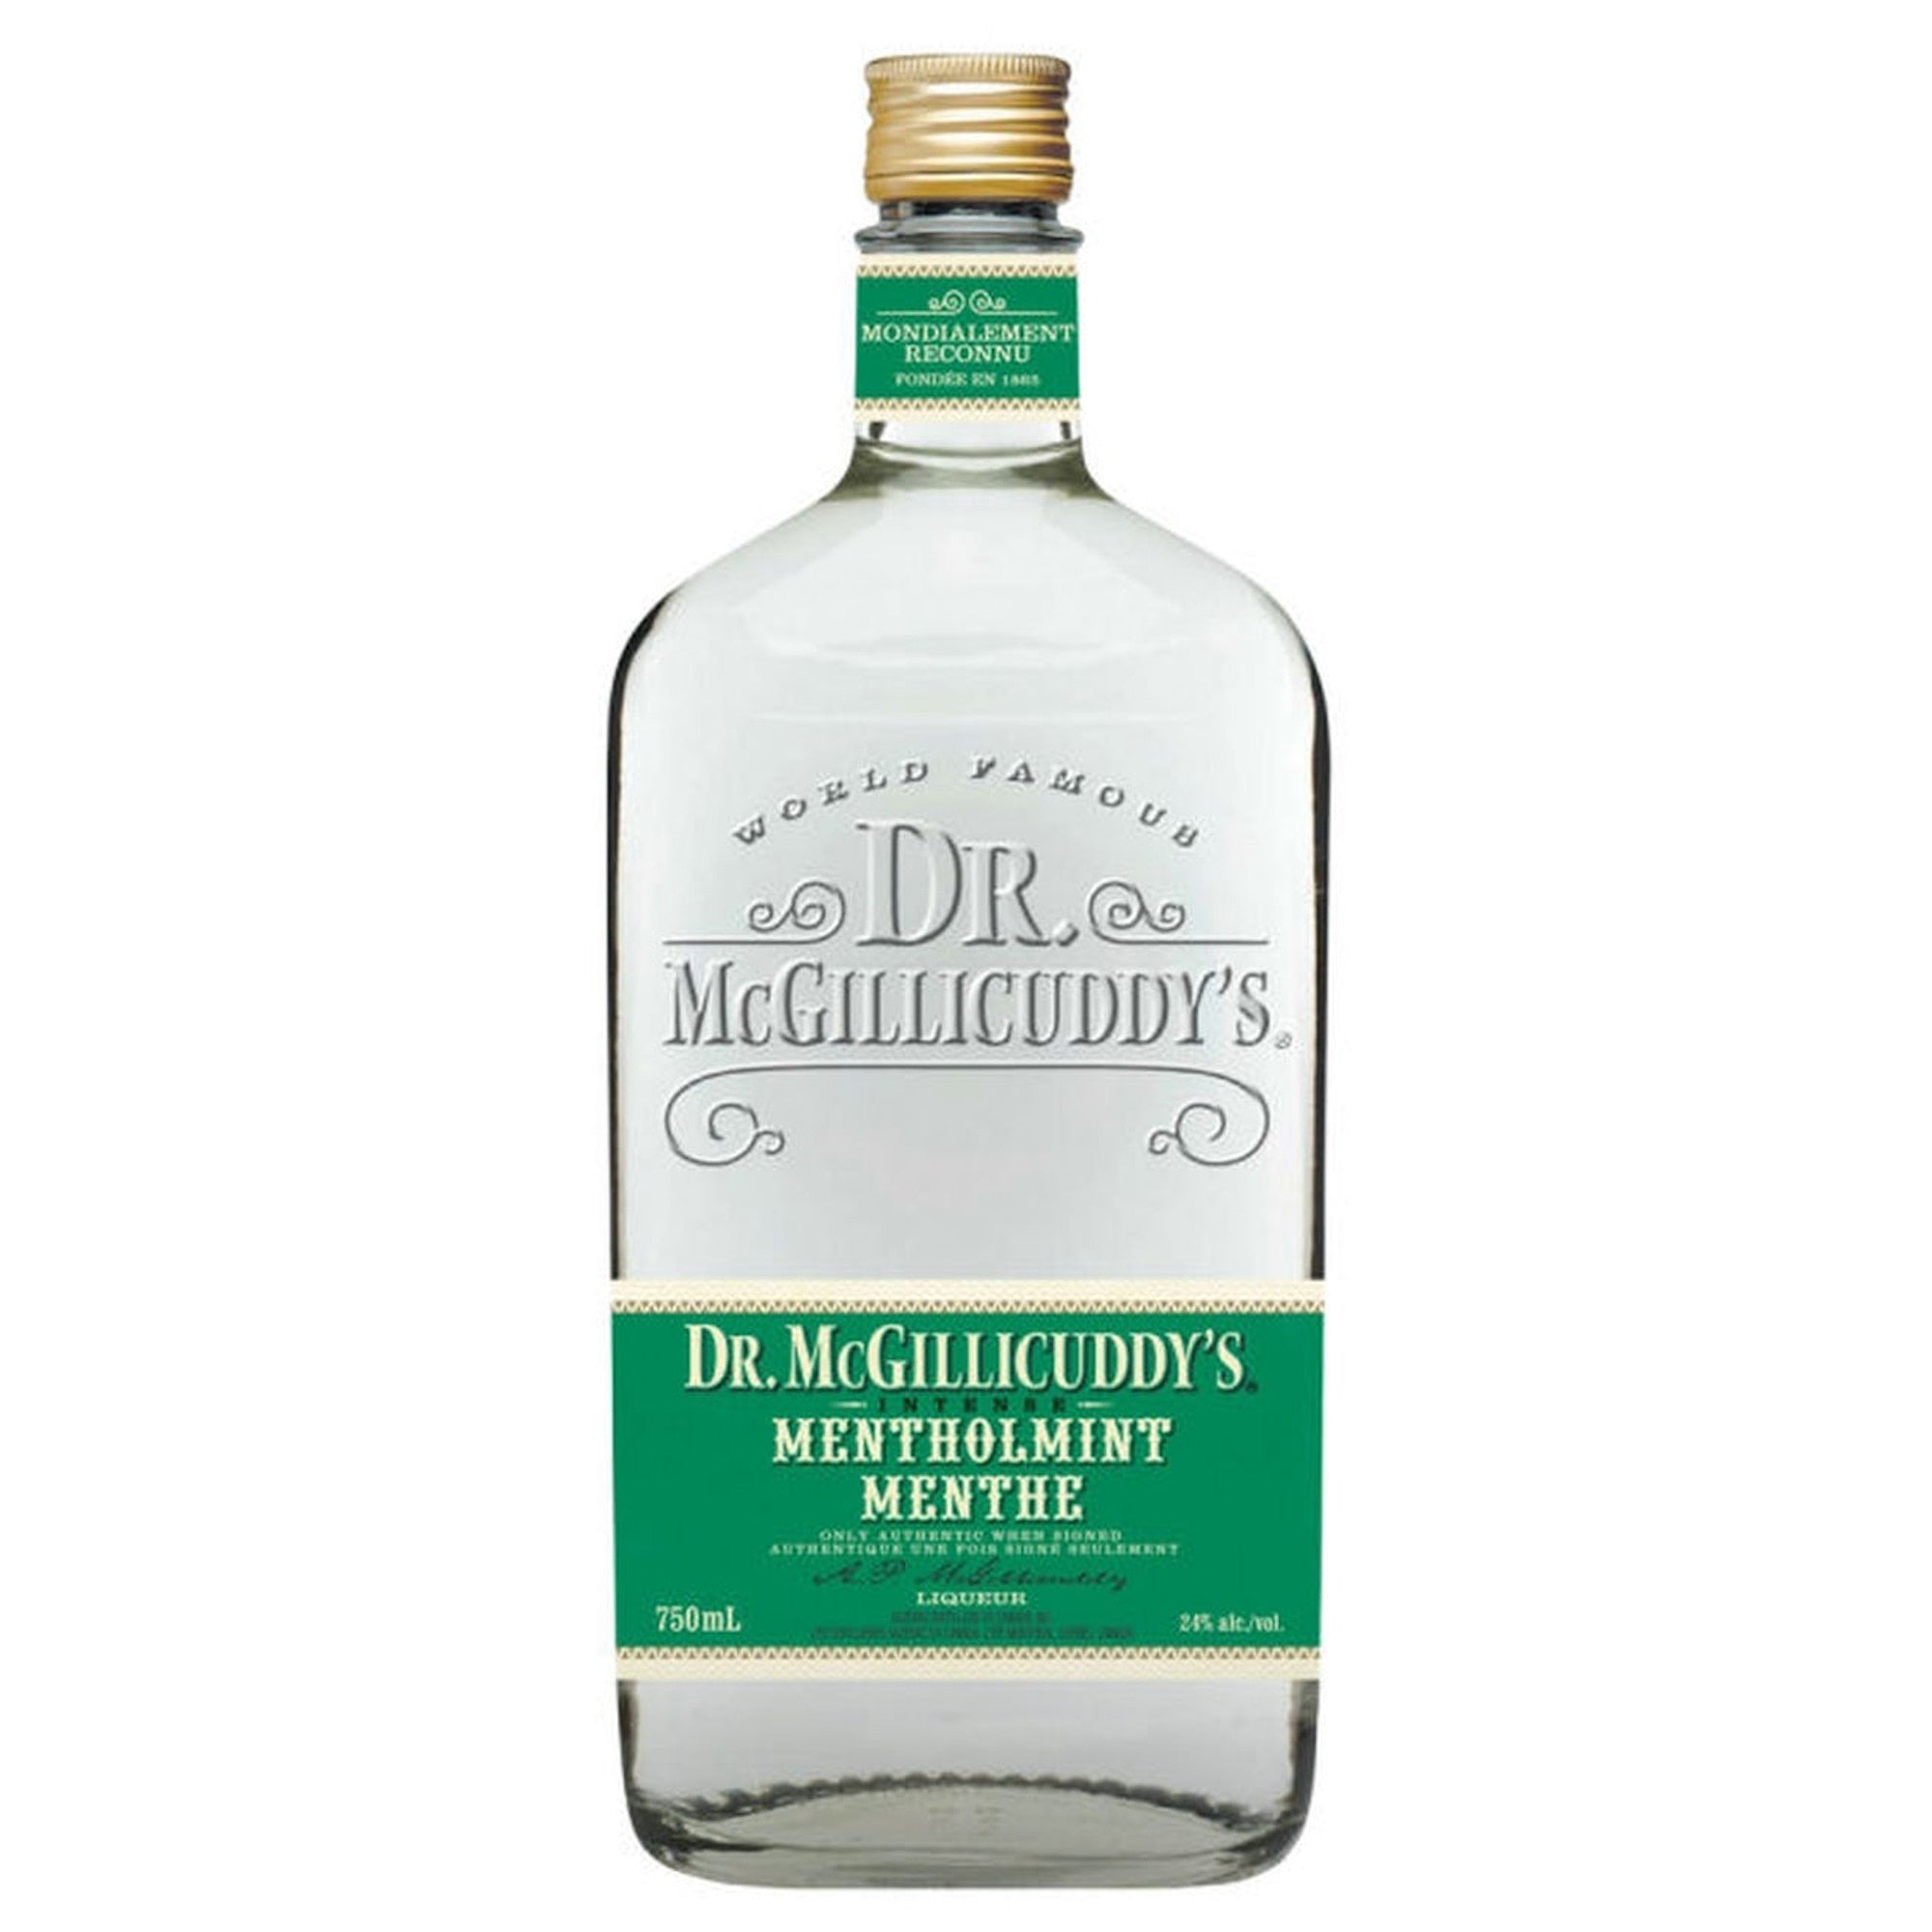 Dr. McGillicuddy's Menthol Mint